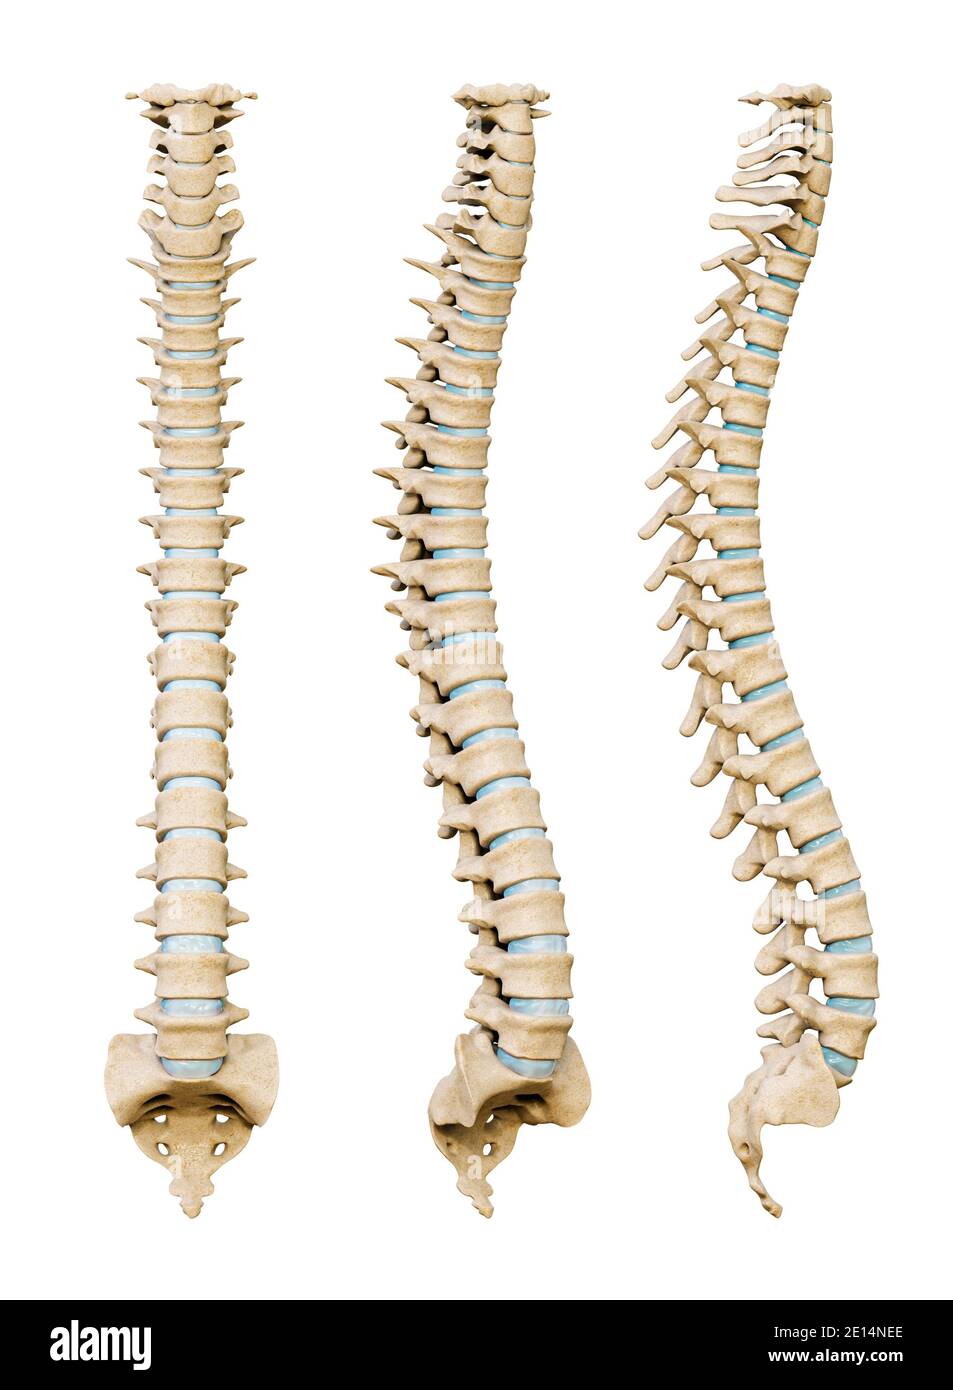 Colonna vertebrale umana o dorsale da vari angoli isolati su uno sfondo bianco. Rappresentazione 3D scientifica di anatomia e medicina. Foto Stock